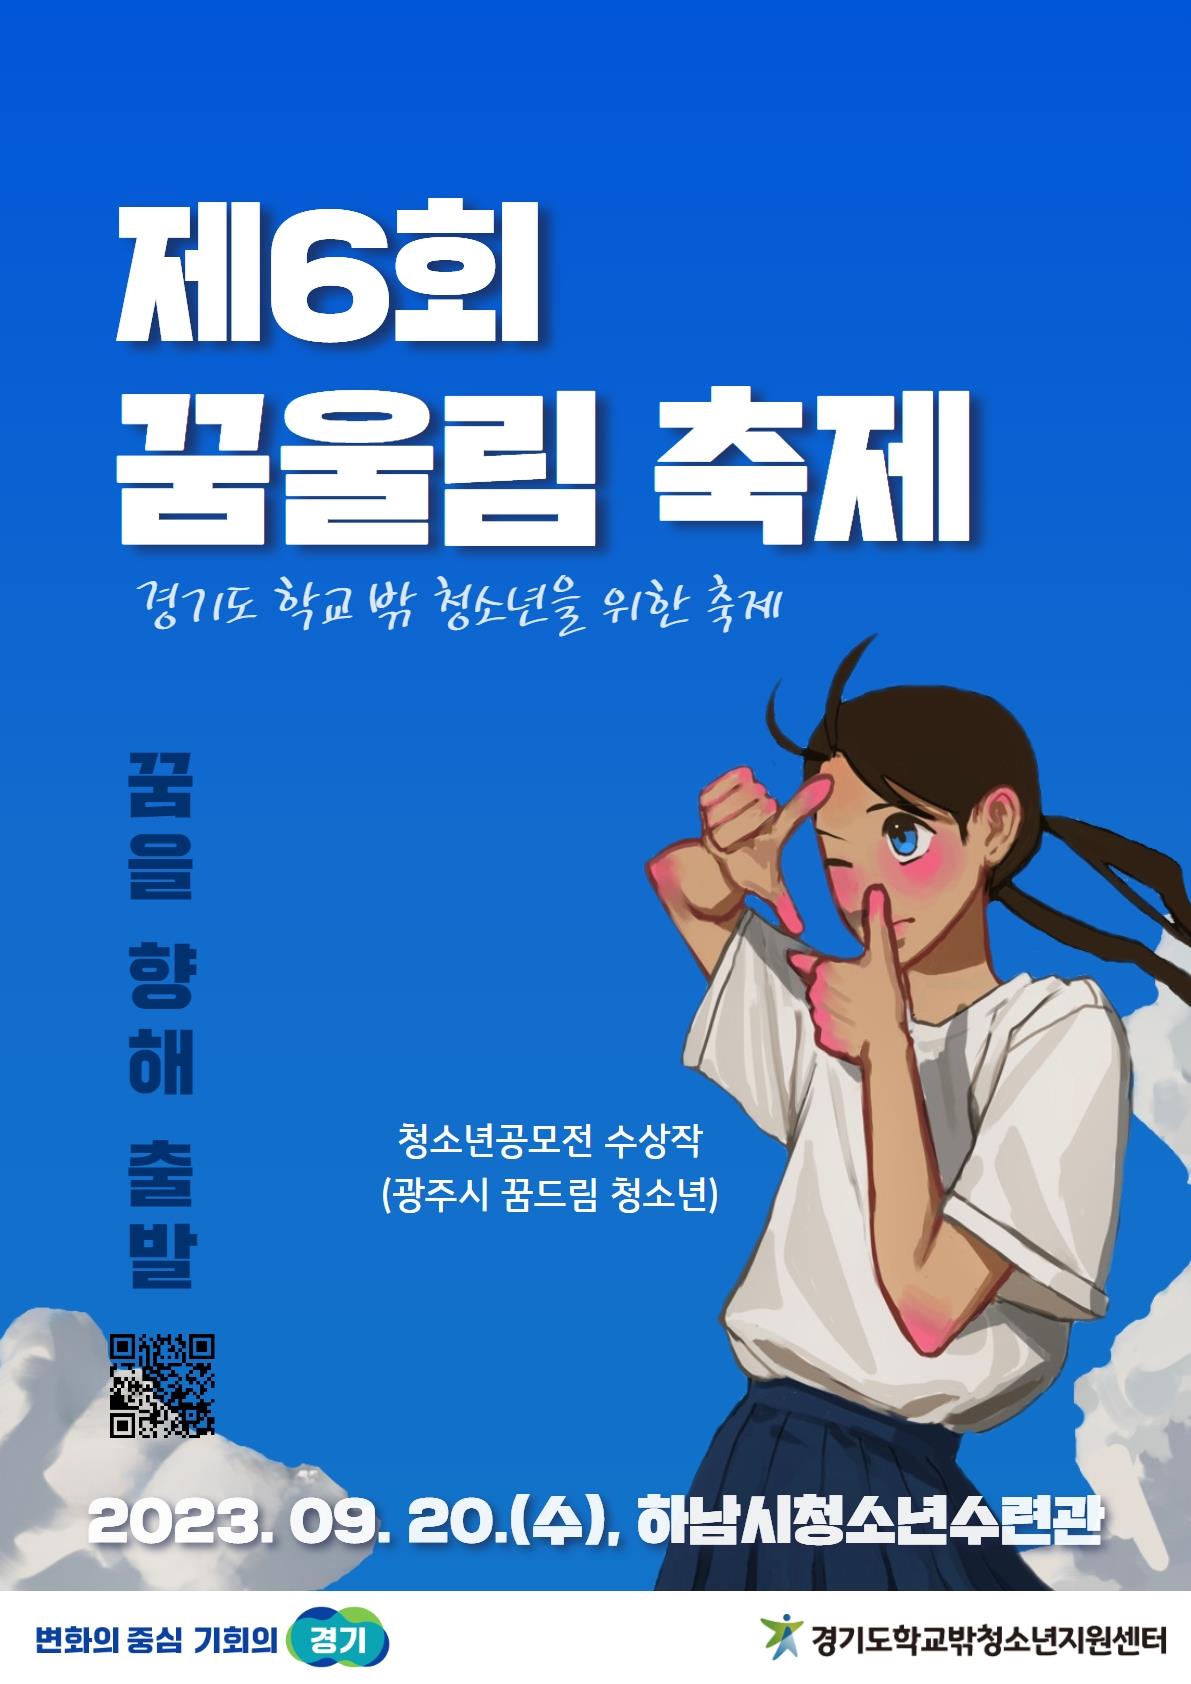 경기도, 20일 학교 밖 청소년 위한 제6회 꿈울림 축제 개최